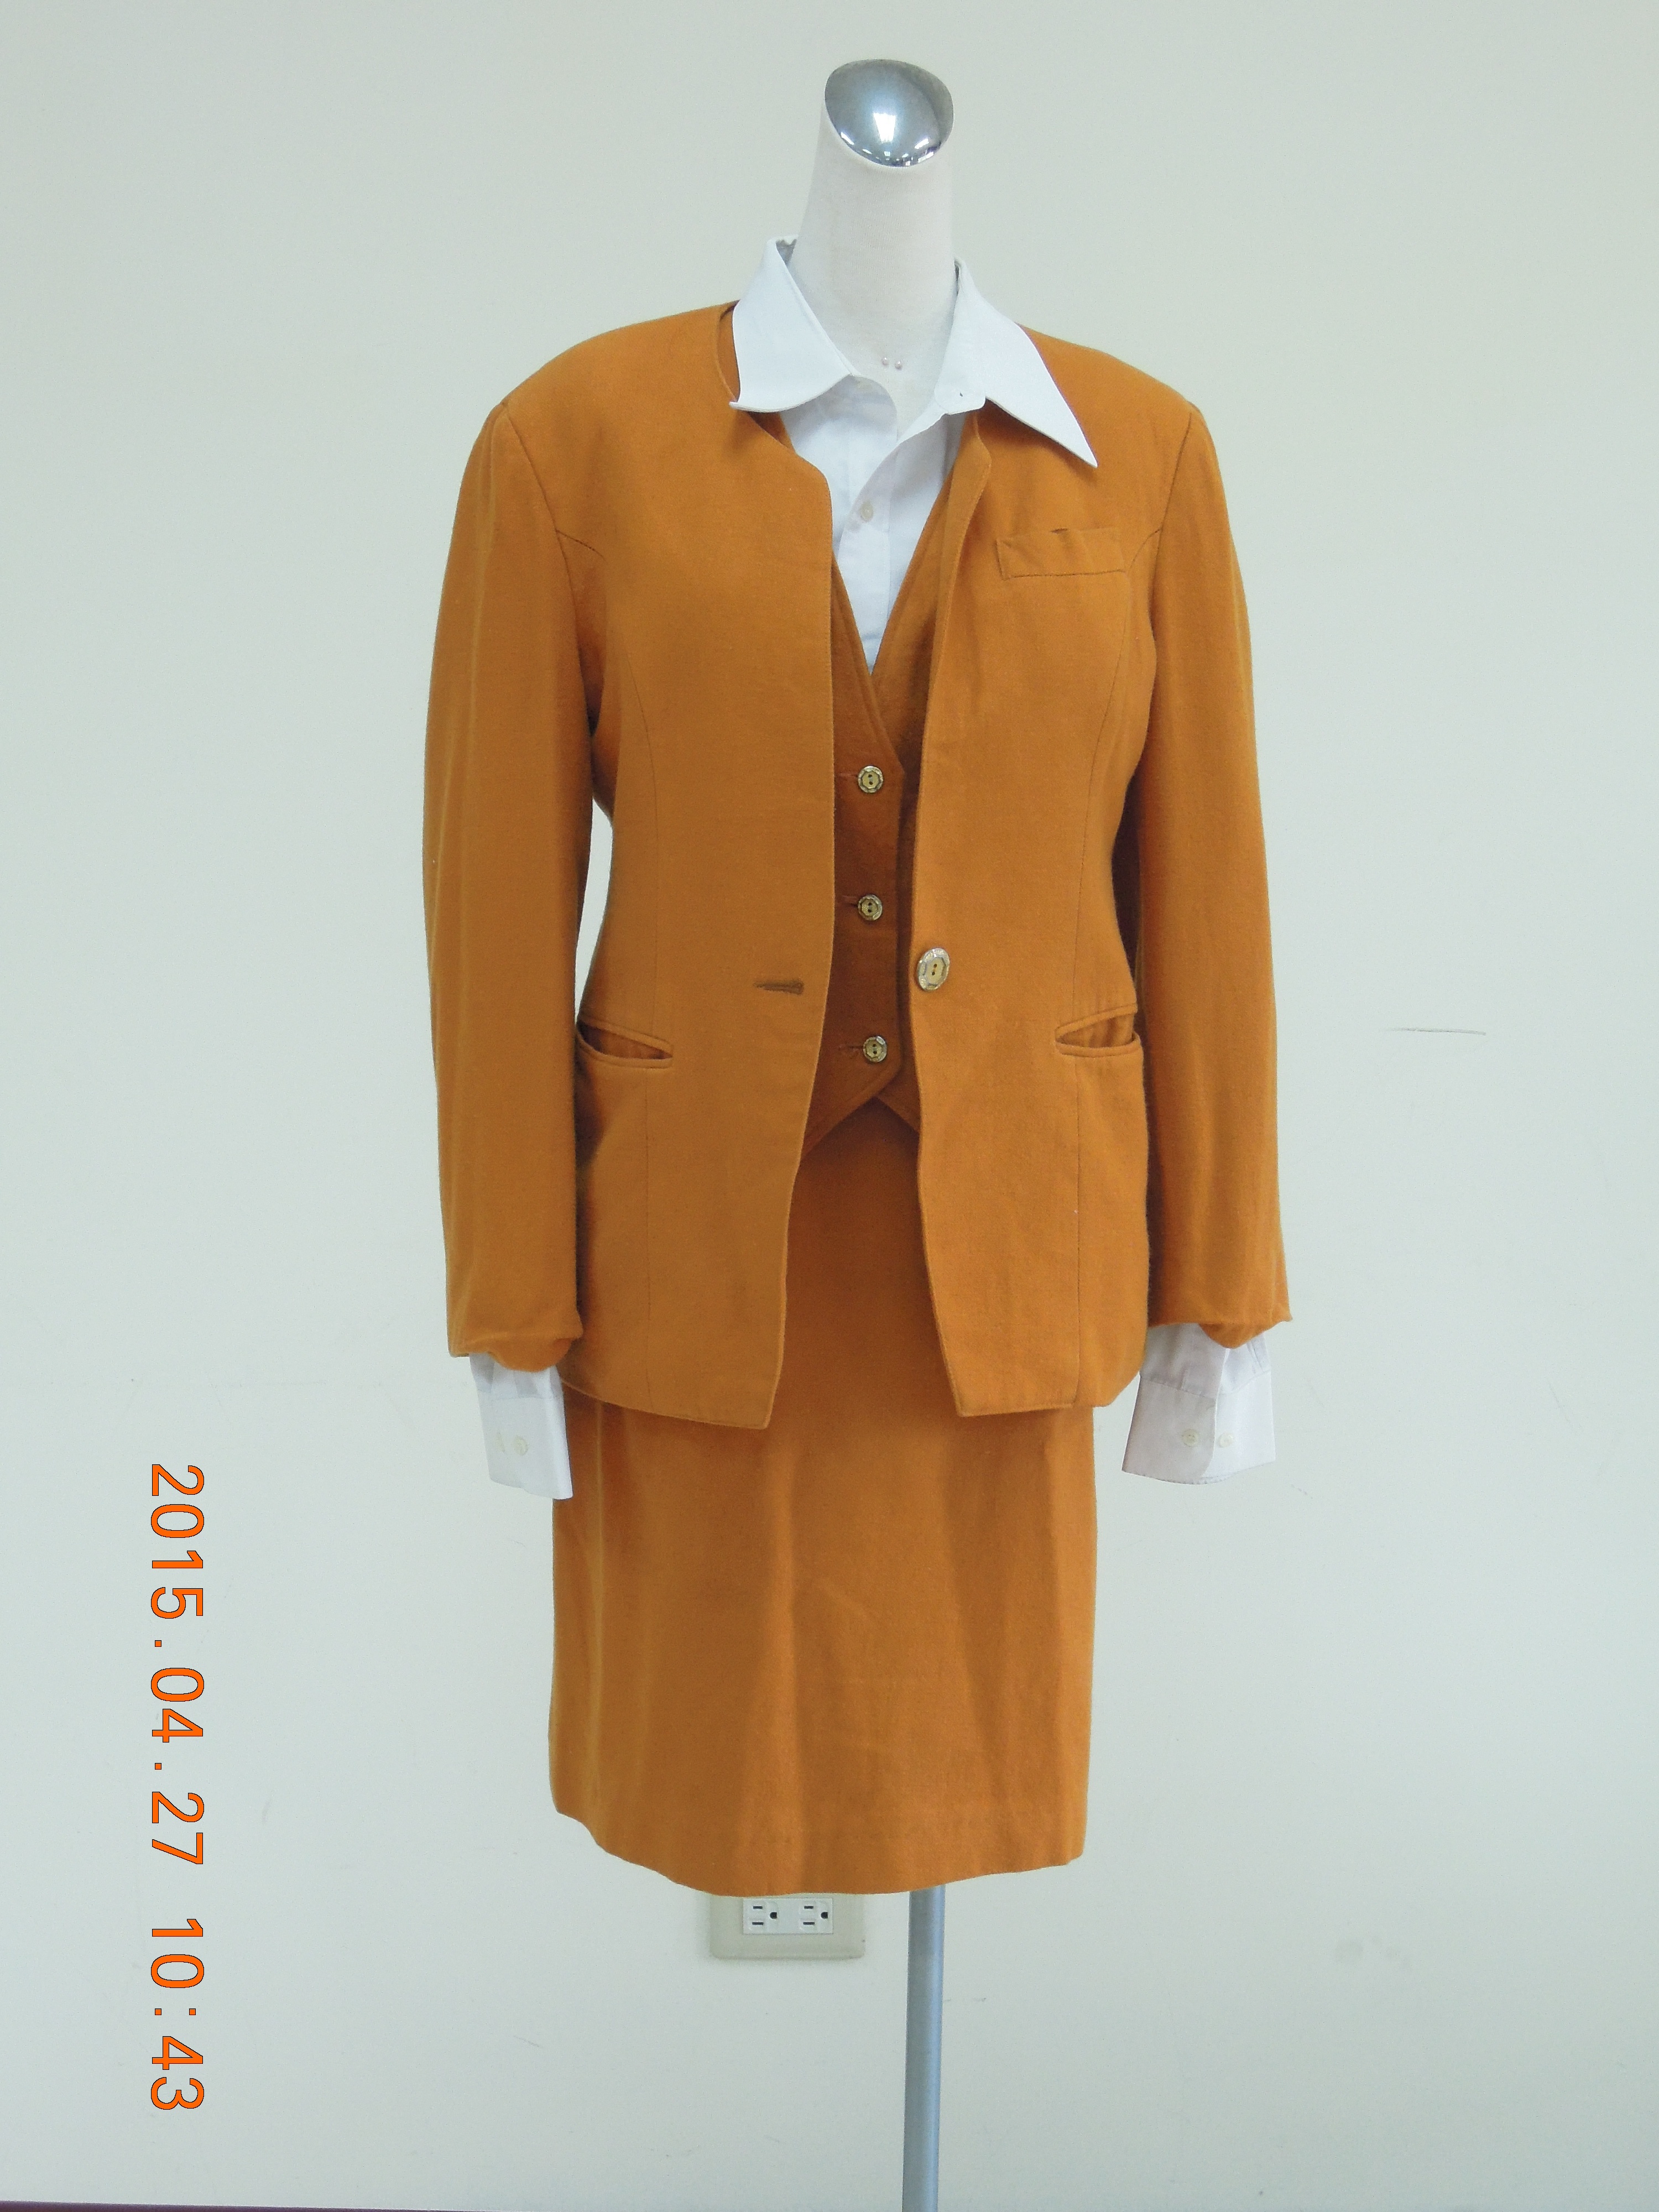 收費員制服之80至89年代冬季黃棕色套裝2